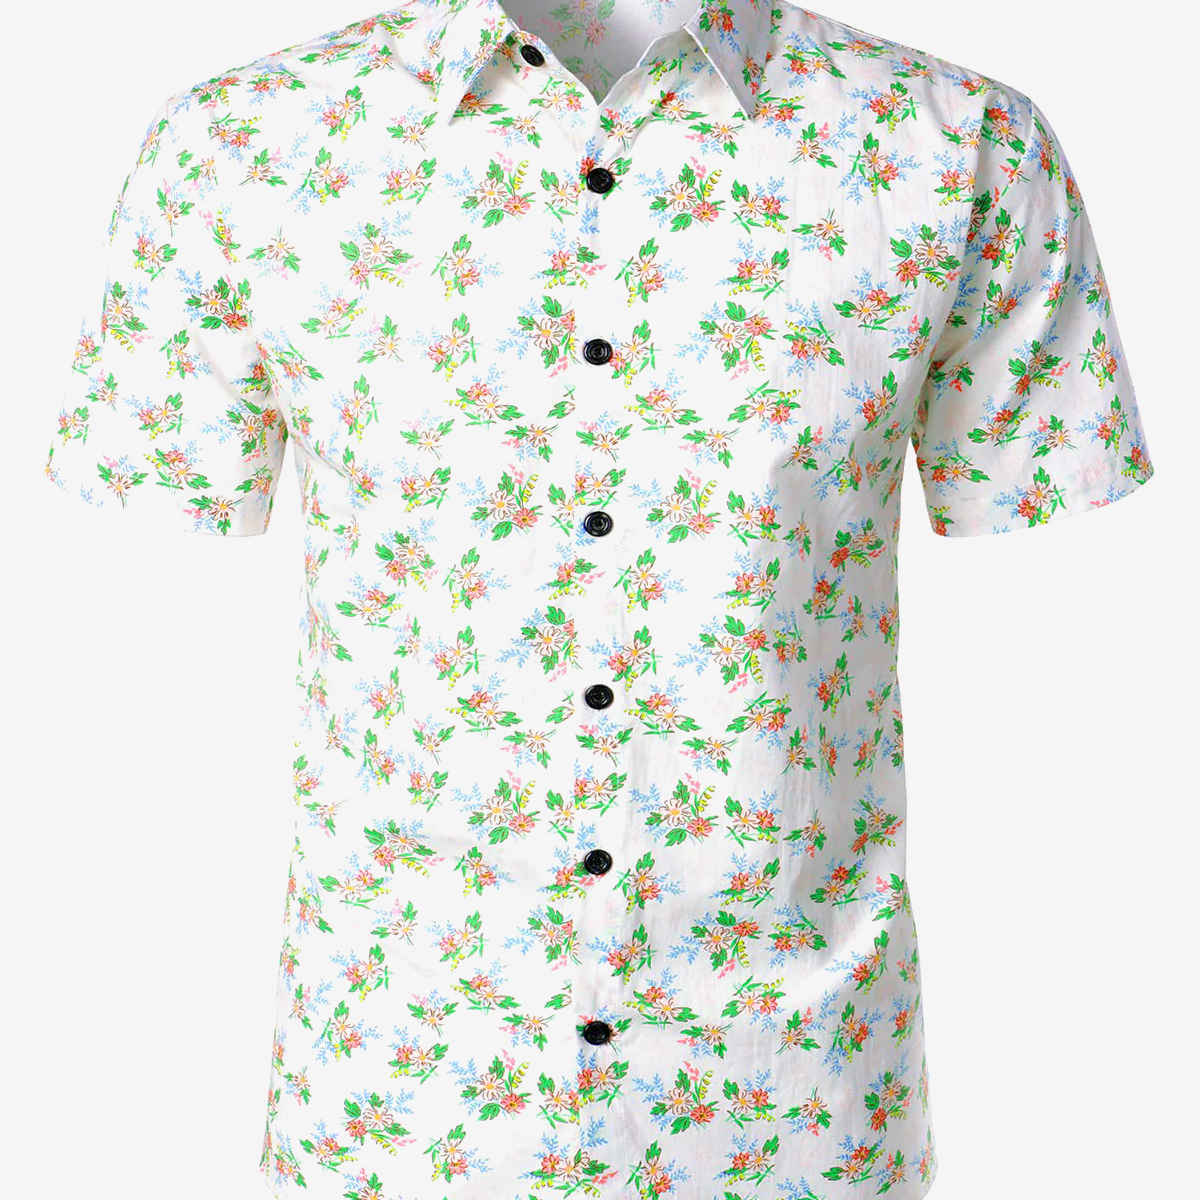 Camisa hawaiana de manga corta blanca con estampado floral transpirable de algodón informal para hombre